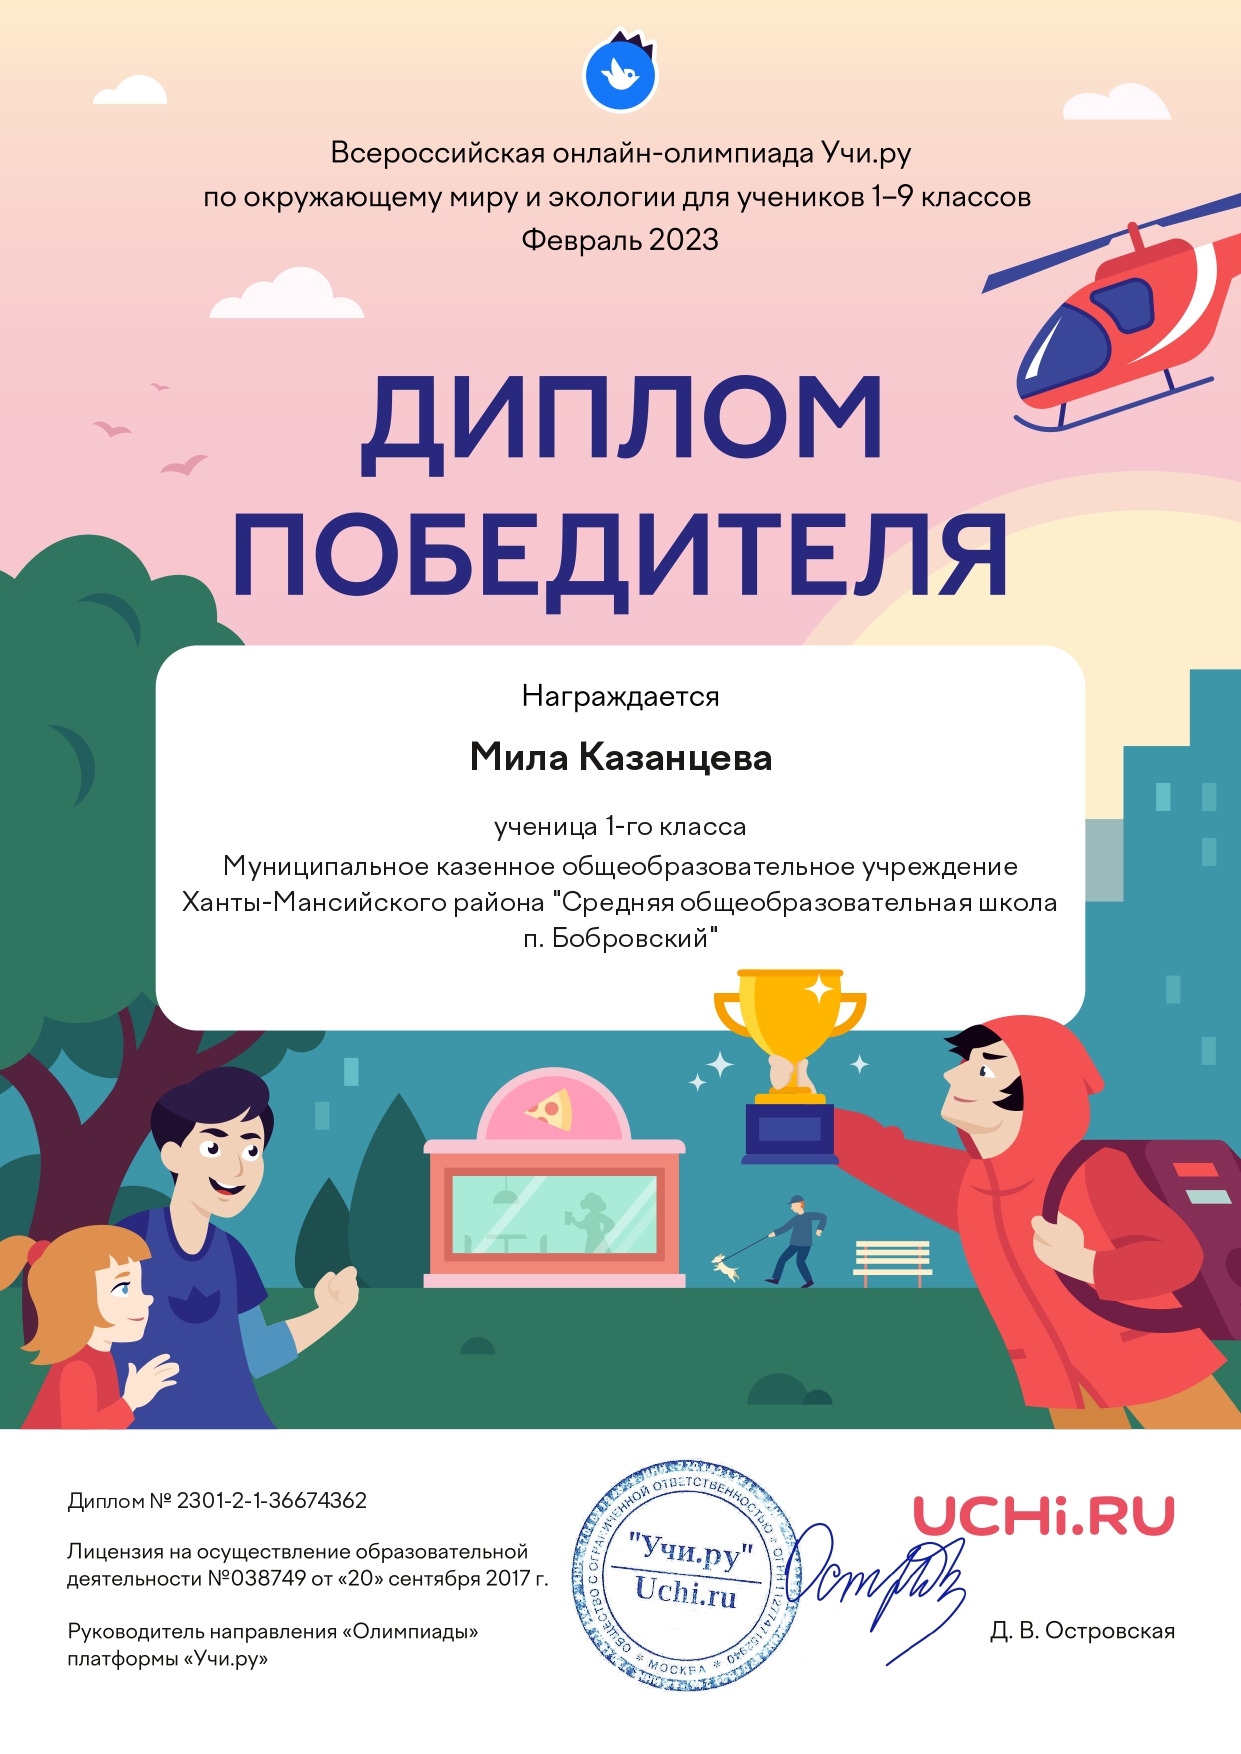 Казанцева Мила. Всероссийская онлайн-олимпиада по окружающему миру и экологии 2023